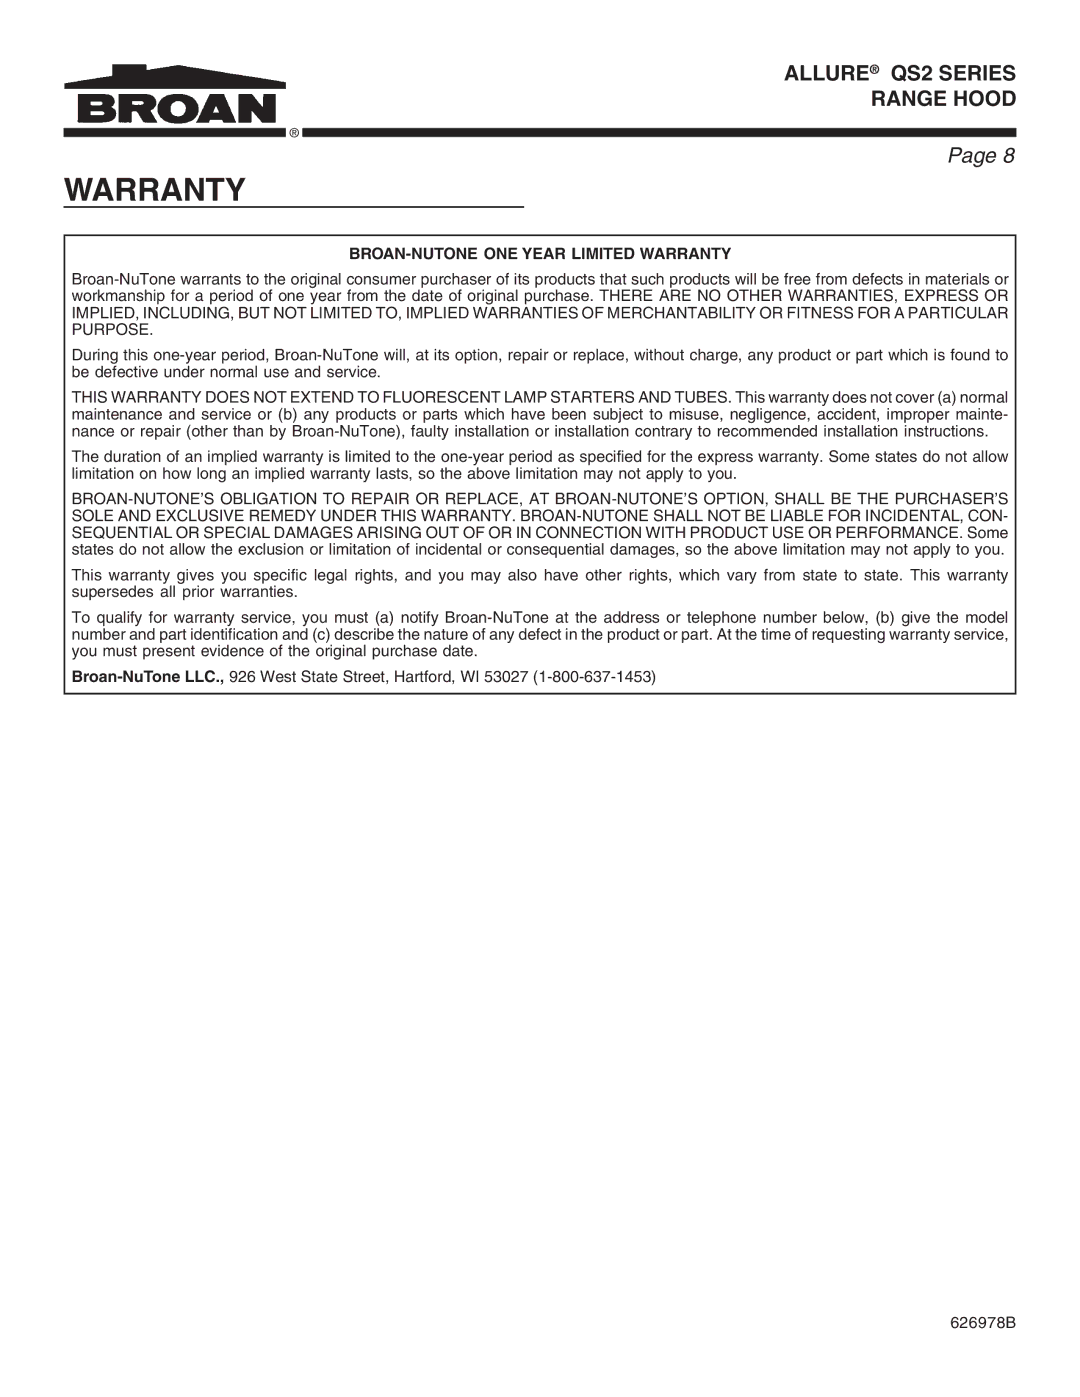 Broan QS2 warranty BROAN-NUTONE ONE Year Limited Warranty 